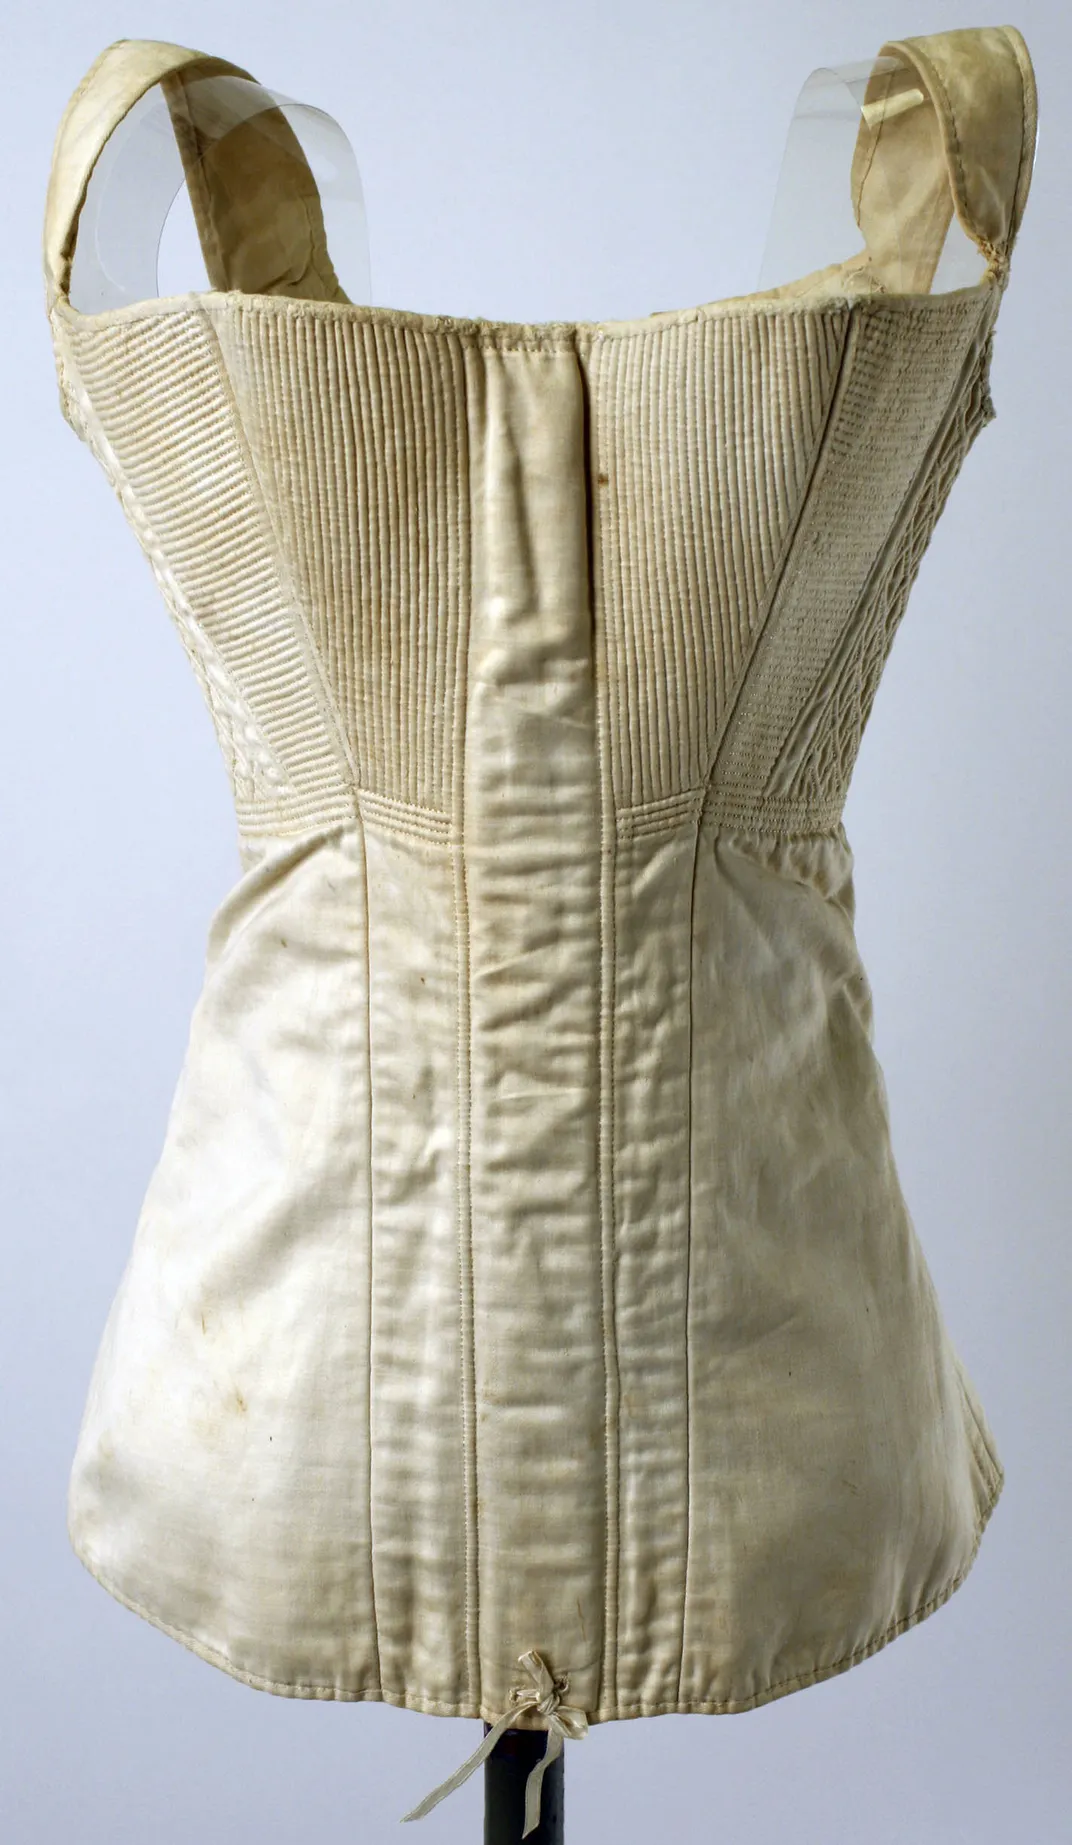 corset story you've done it again 😍😍 #corsetstory #bridgerton #loves